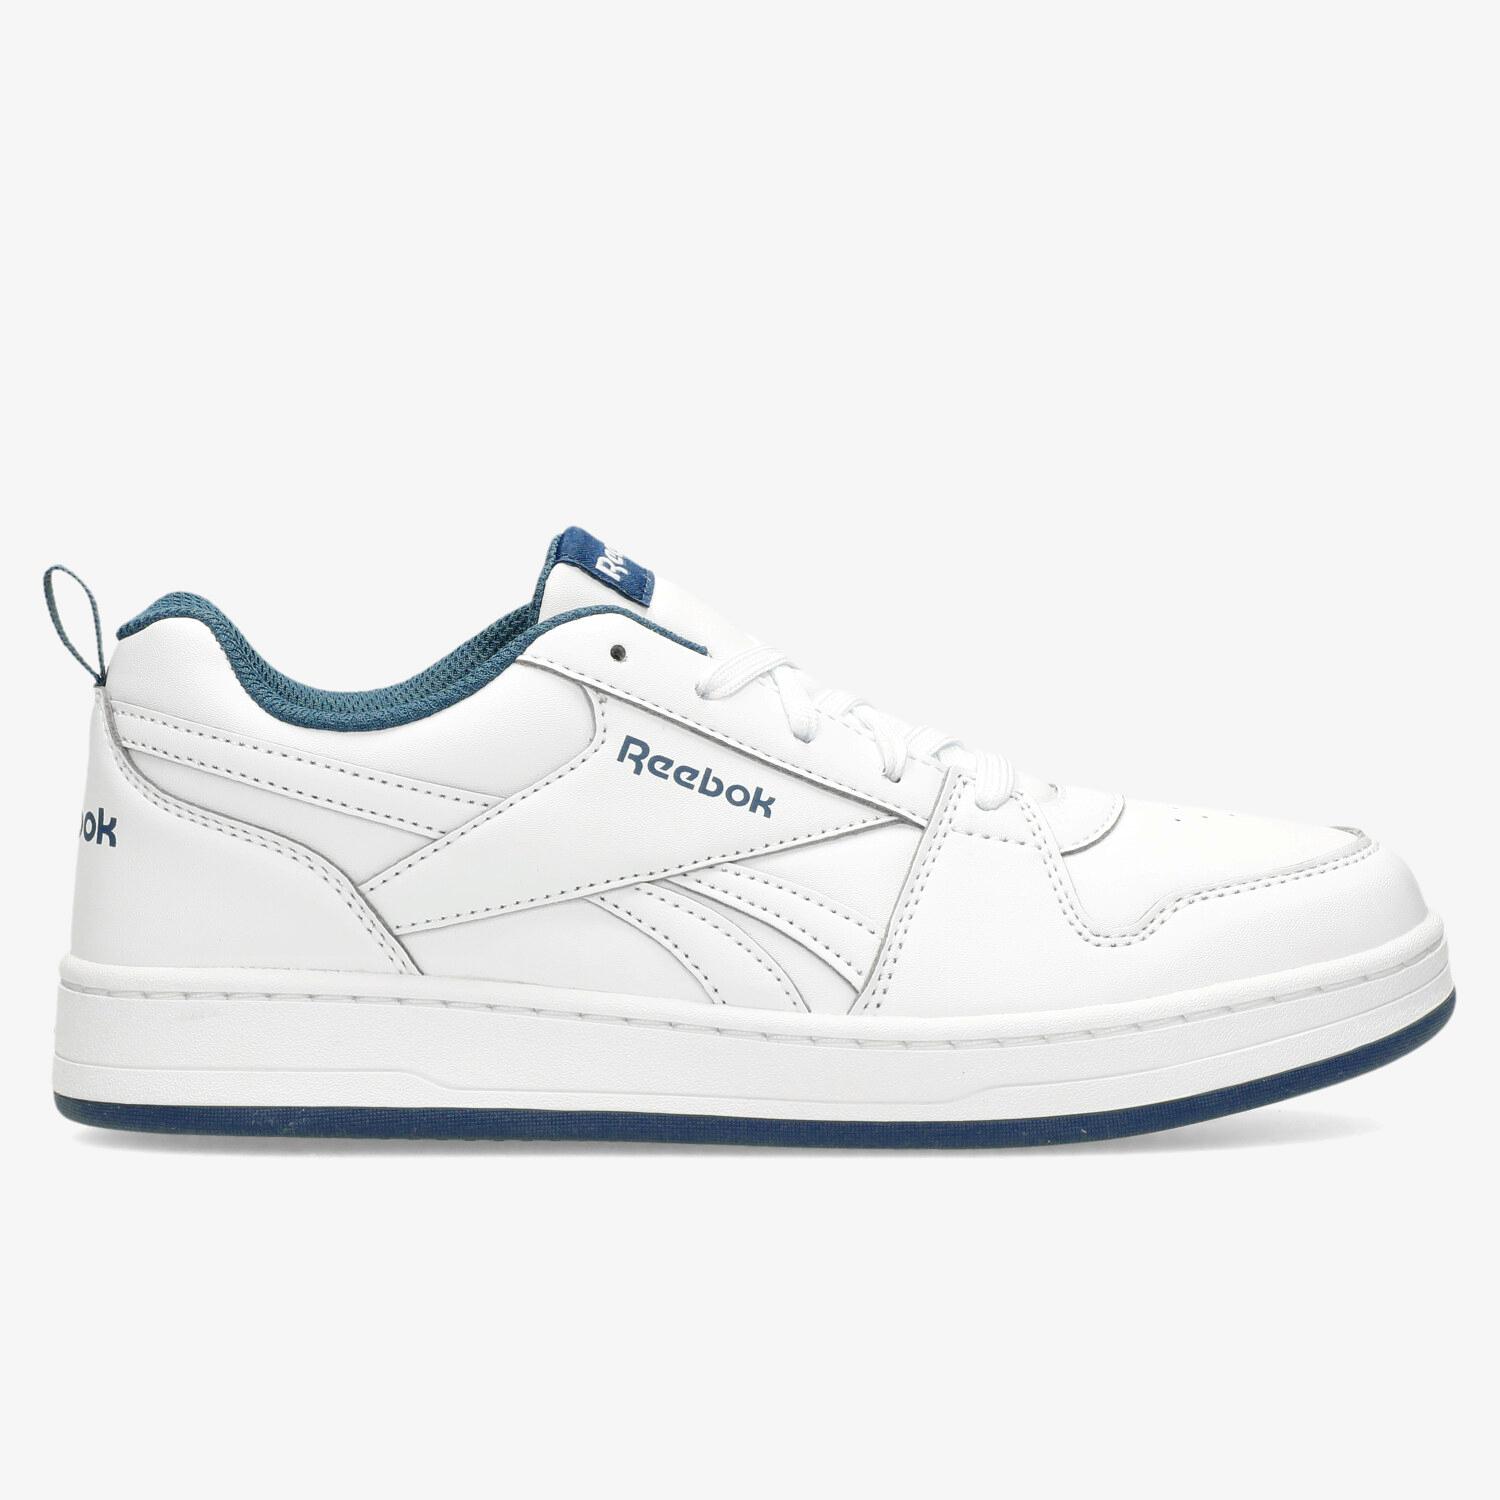 Zapatillas deportivas niñas Reebok en color blanco. Talla 22 Color